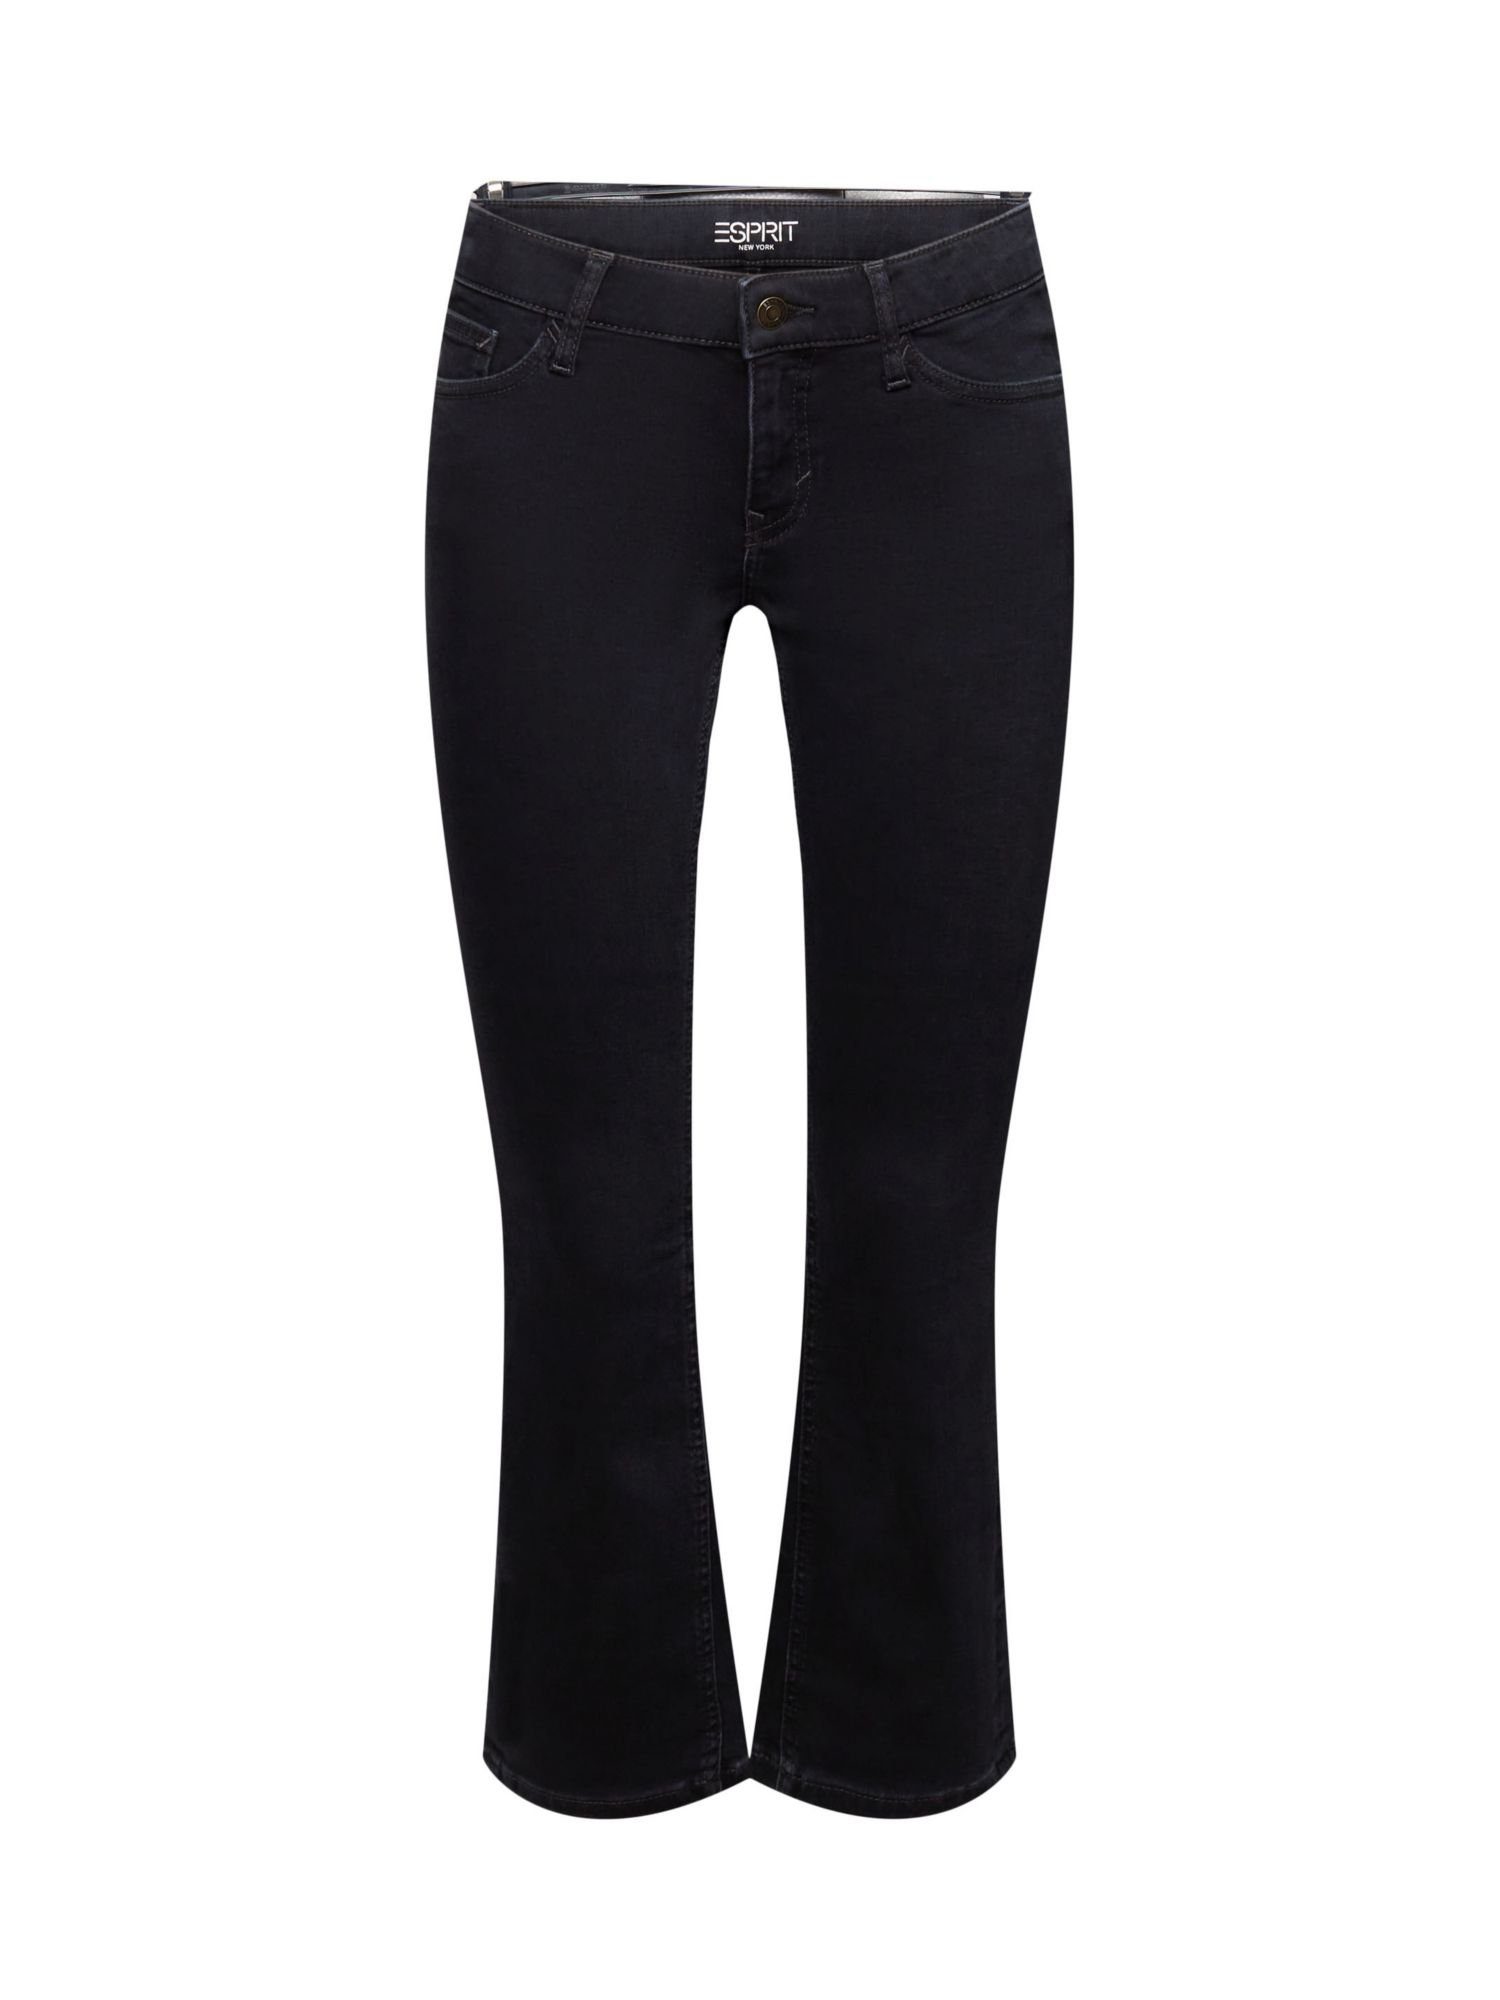 Esprit 7/8-Jeans Verkürzte Bootcut Jeans mit mittlerer Bundhöhe | 7/8-Jeans